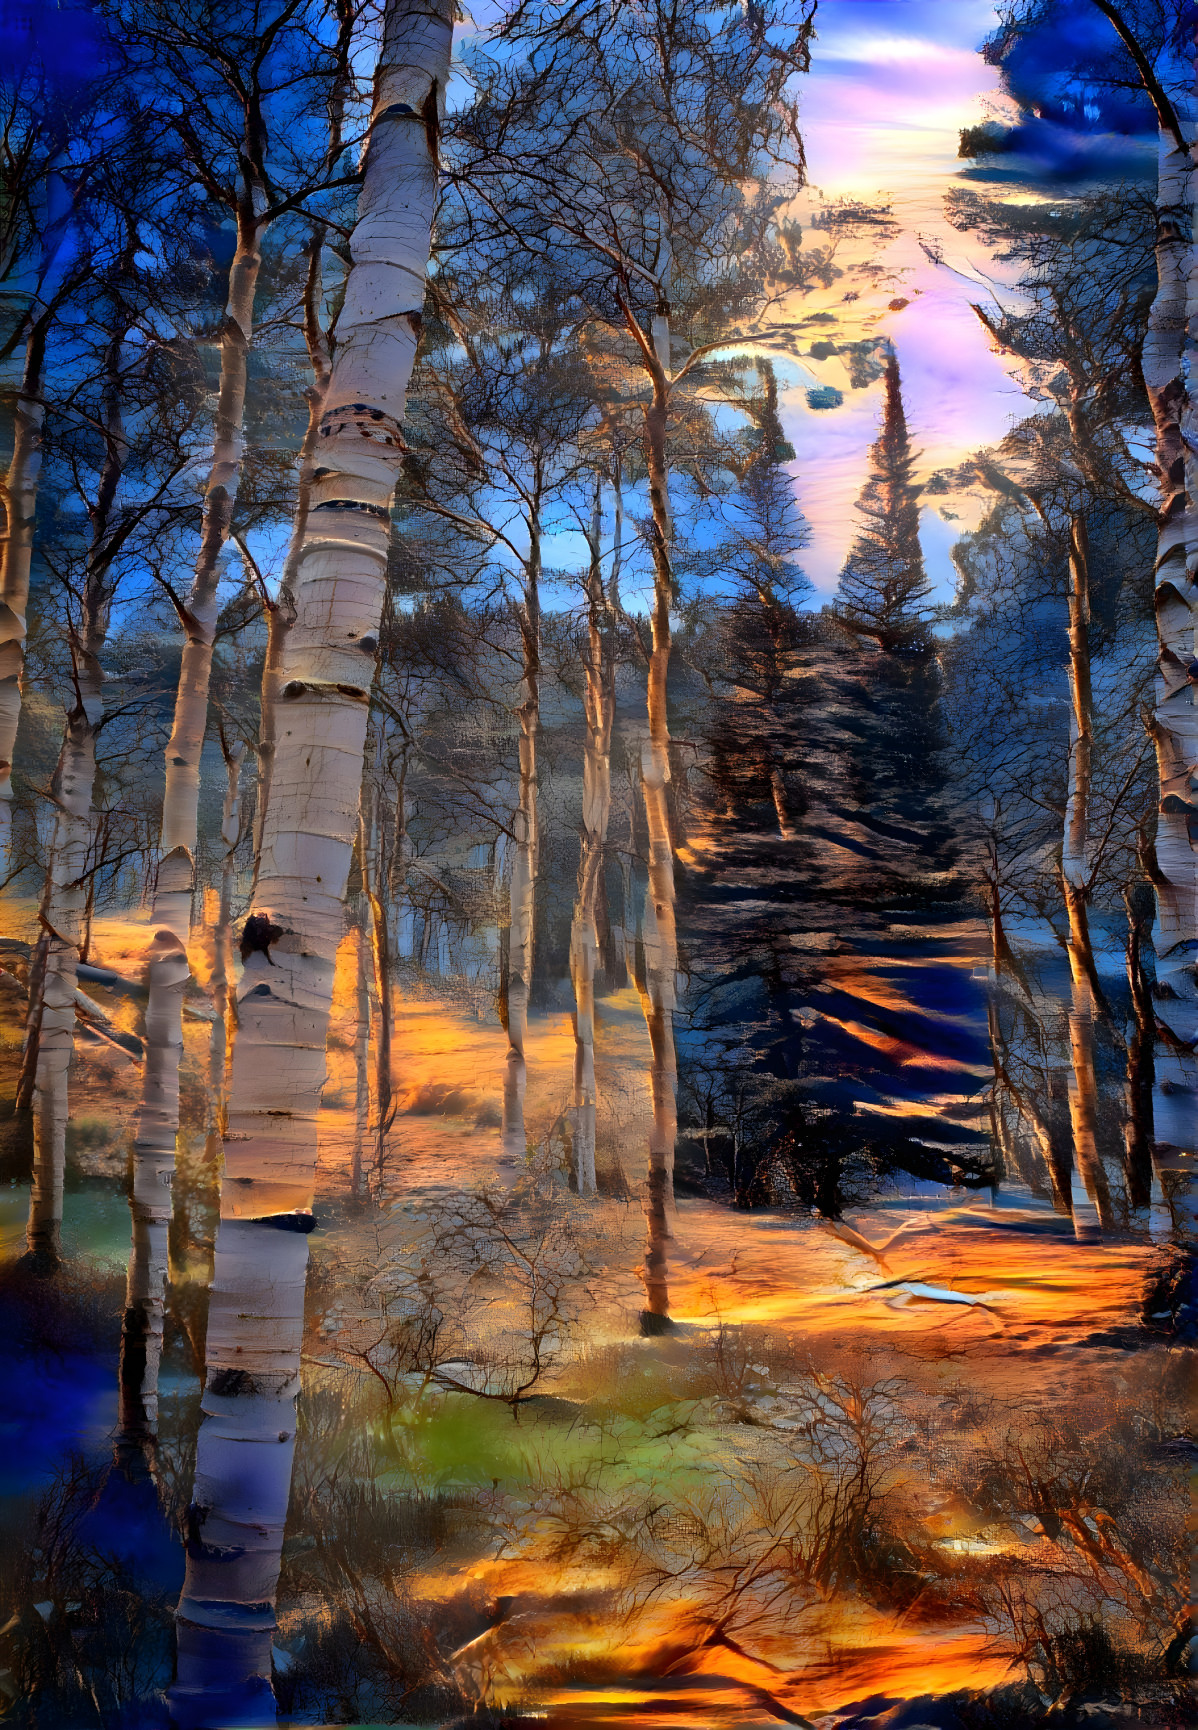 Moonlit pines